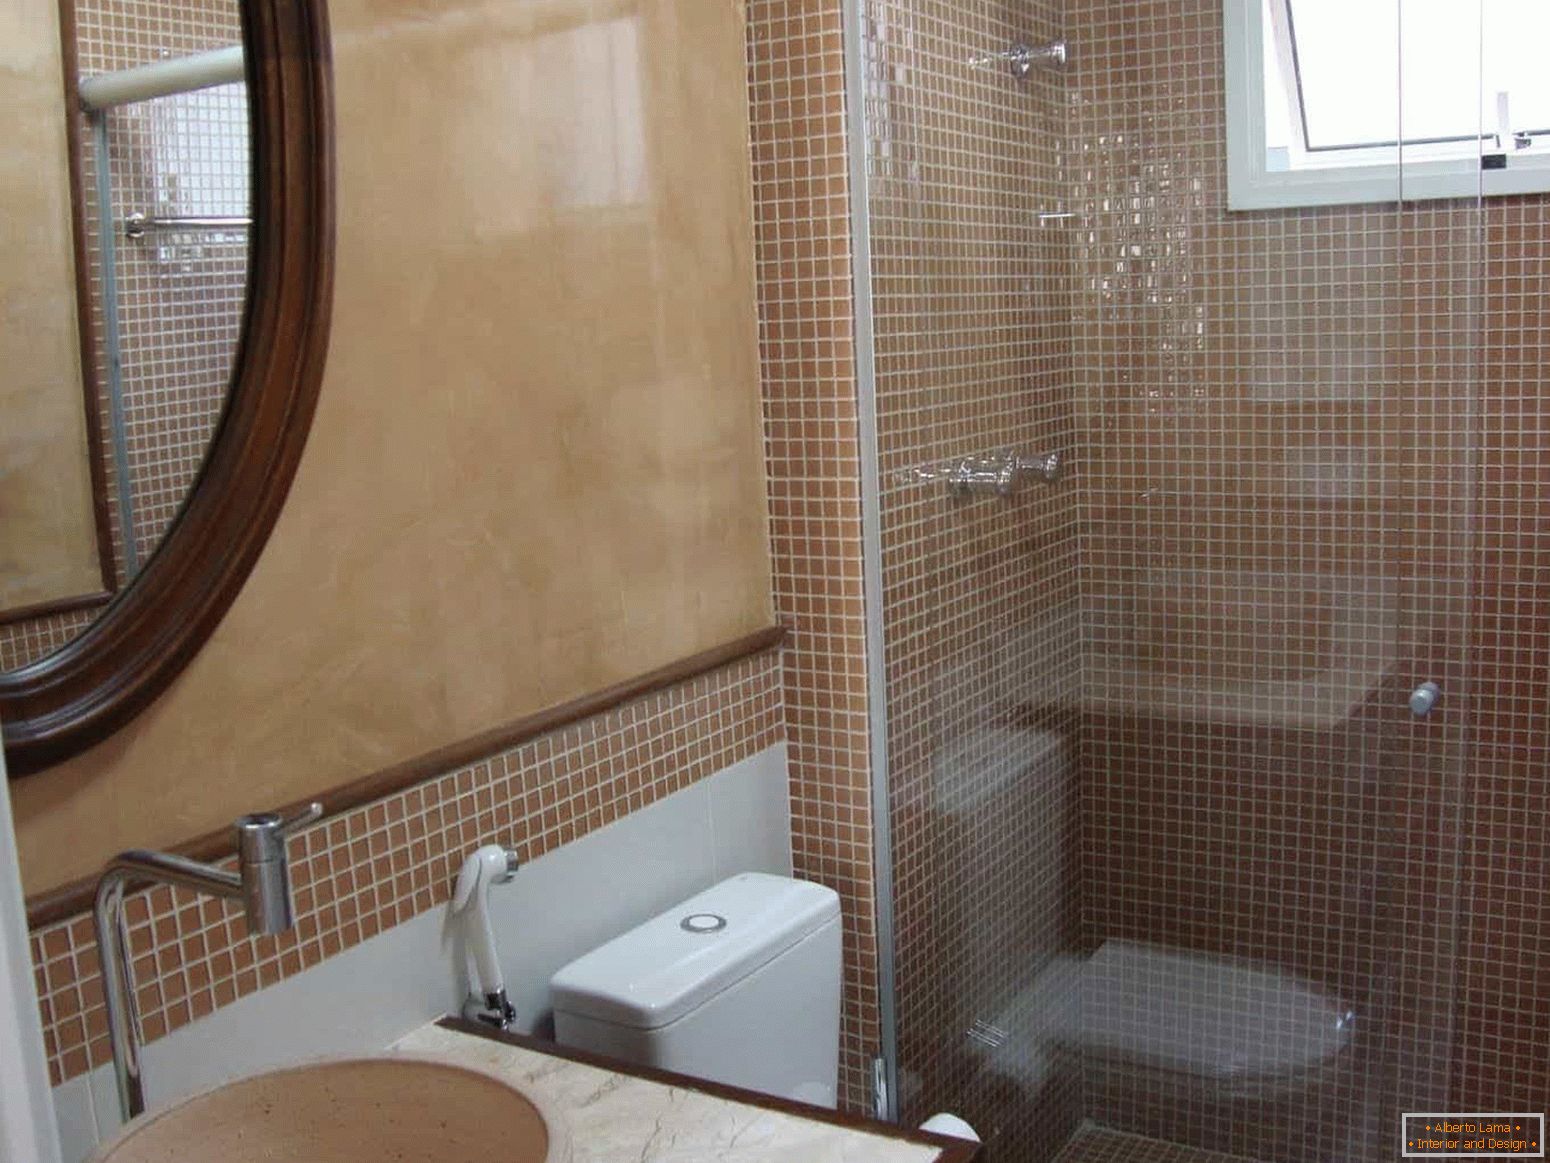 Mozaika jest popularna w wykańczaniu łazienki w domu panelowym